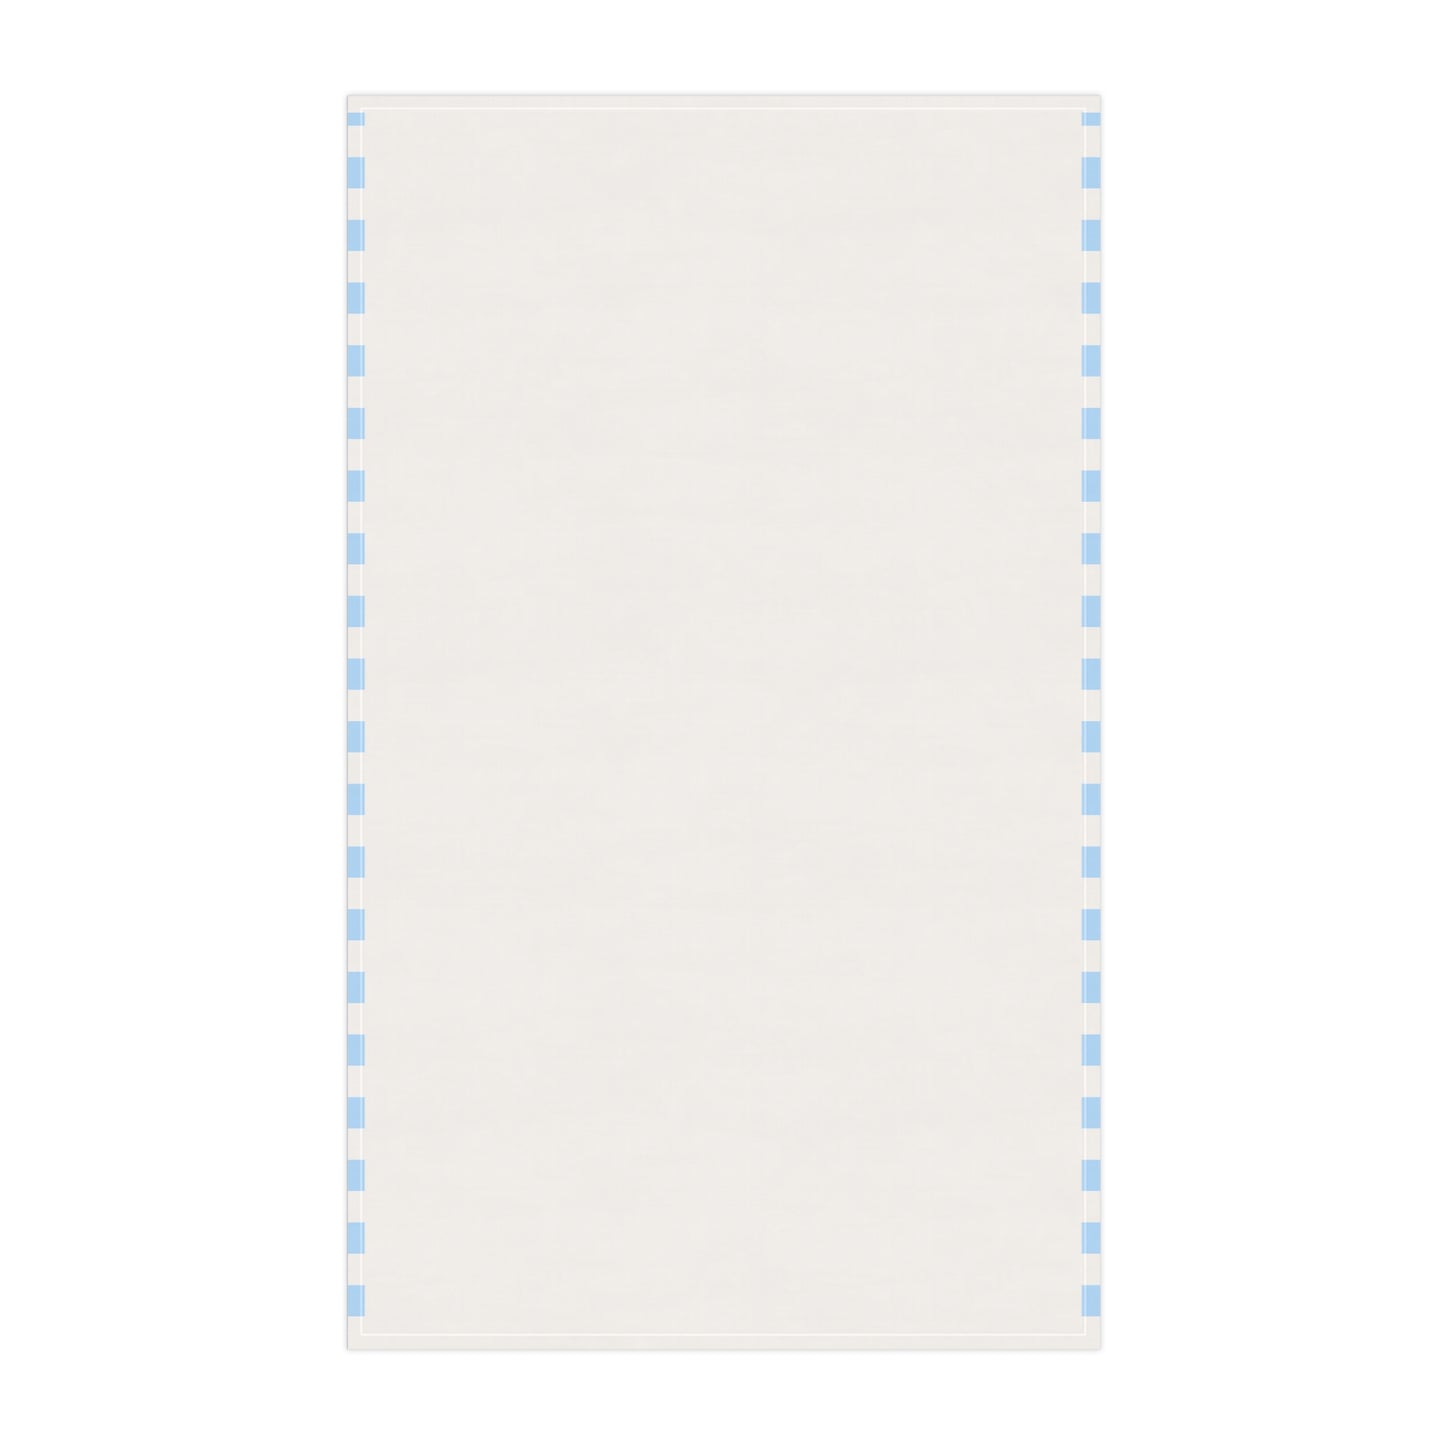 Robin Bird Art Kitchen Towel Blue White 18" × 30"